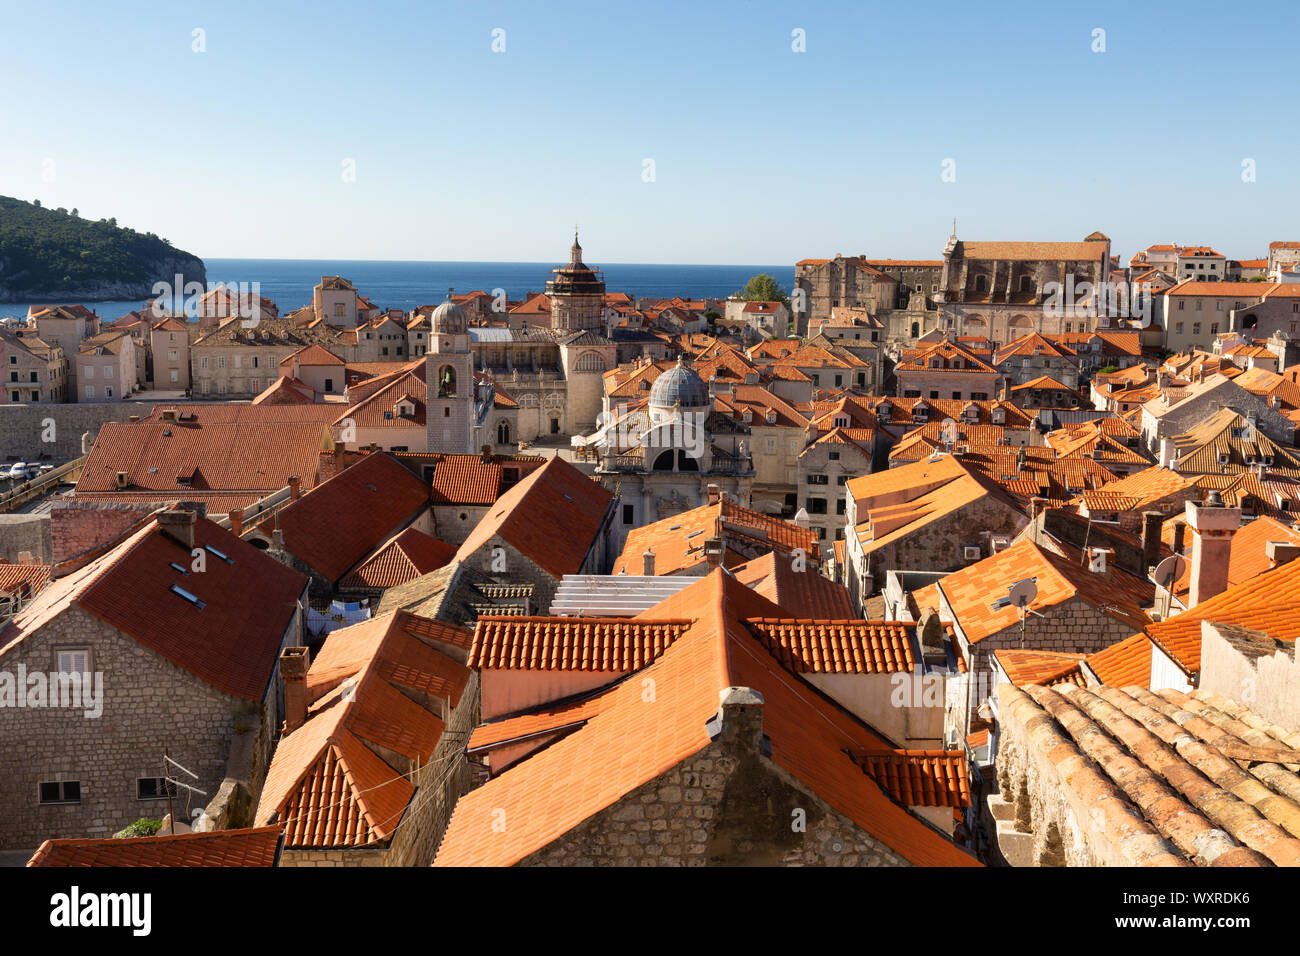 Dubrovnik Croatie, toits de tuiles rouges ; à l'époque médiévale La vieille ville de Dubrovnik, vu depuis le mur, Dubrovnik Croatie Europe Banque D'Images